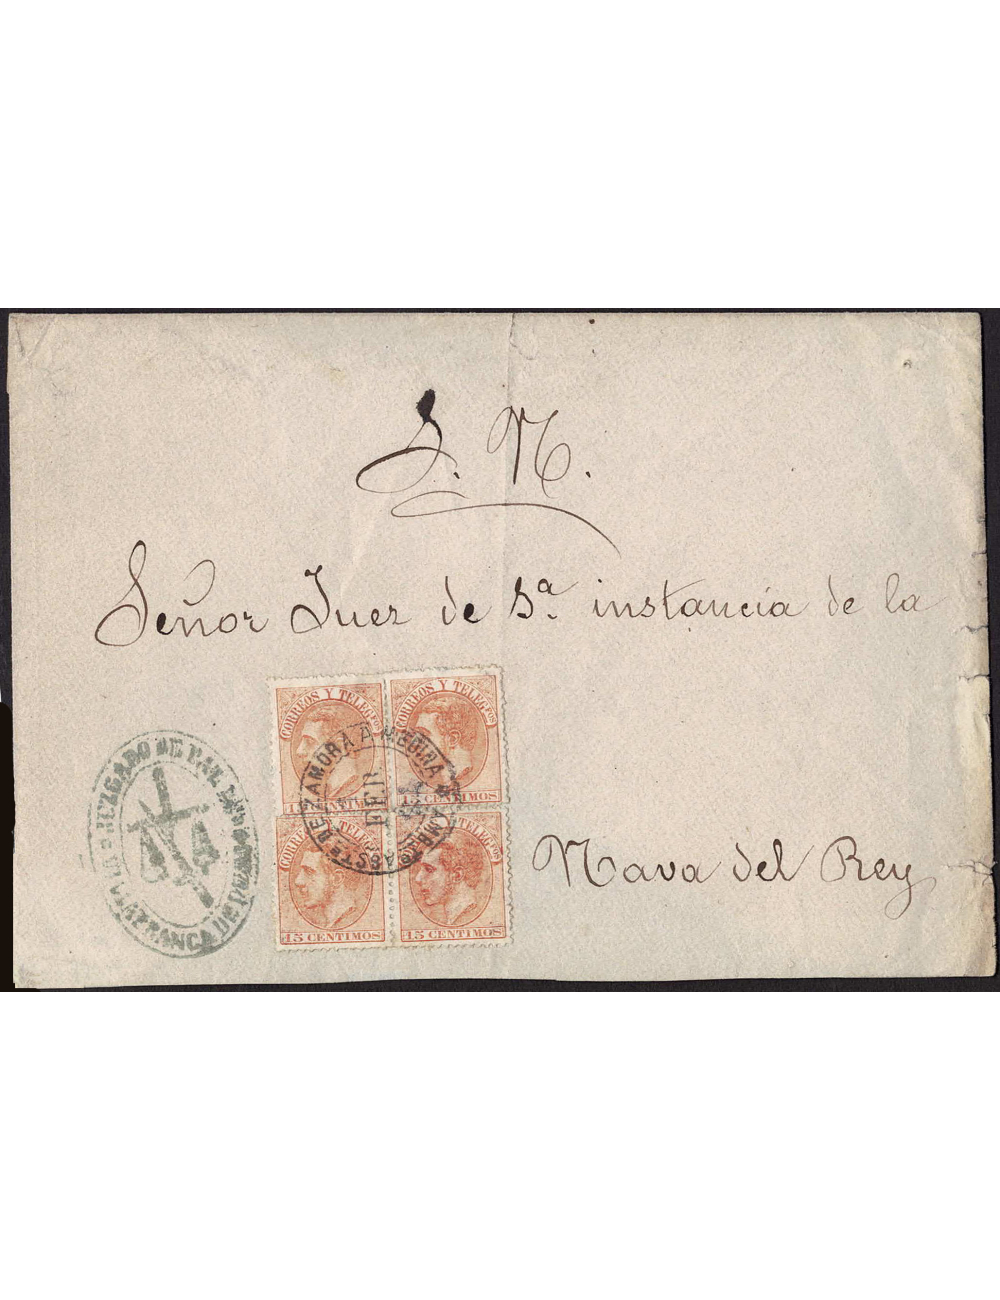 1884 (1 FEB) Villafranca de Duero a Nava de Rey. 15 cts. naranja, bloque de cuatro mat. ambulante “AMBTE ASCTE DE ZAMORA A MEDIN